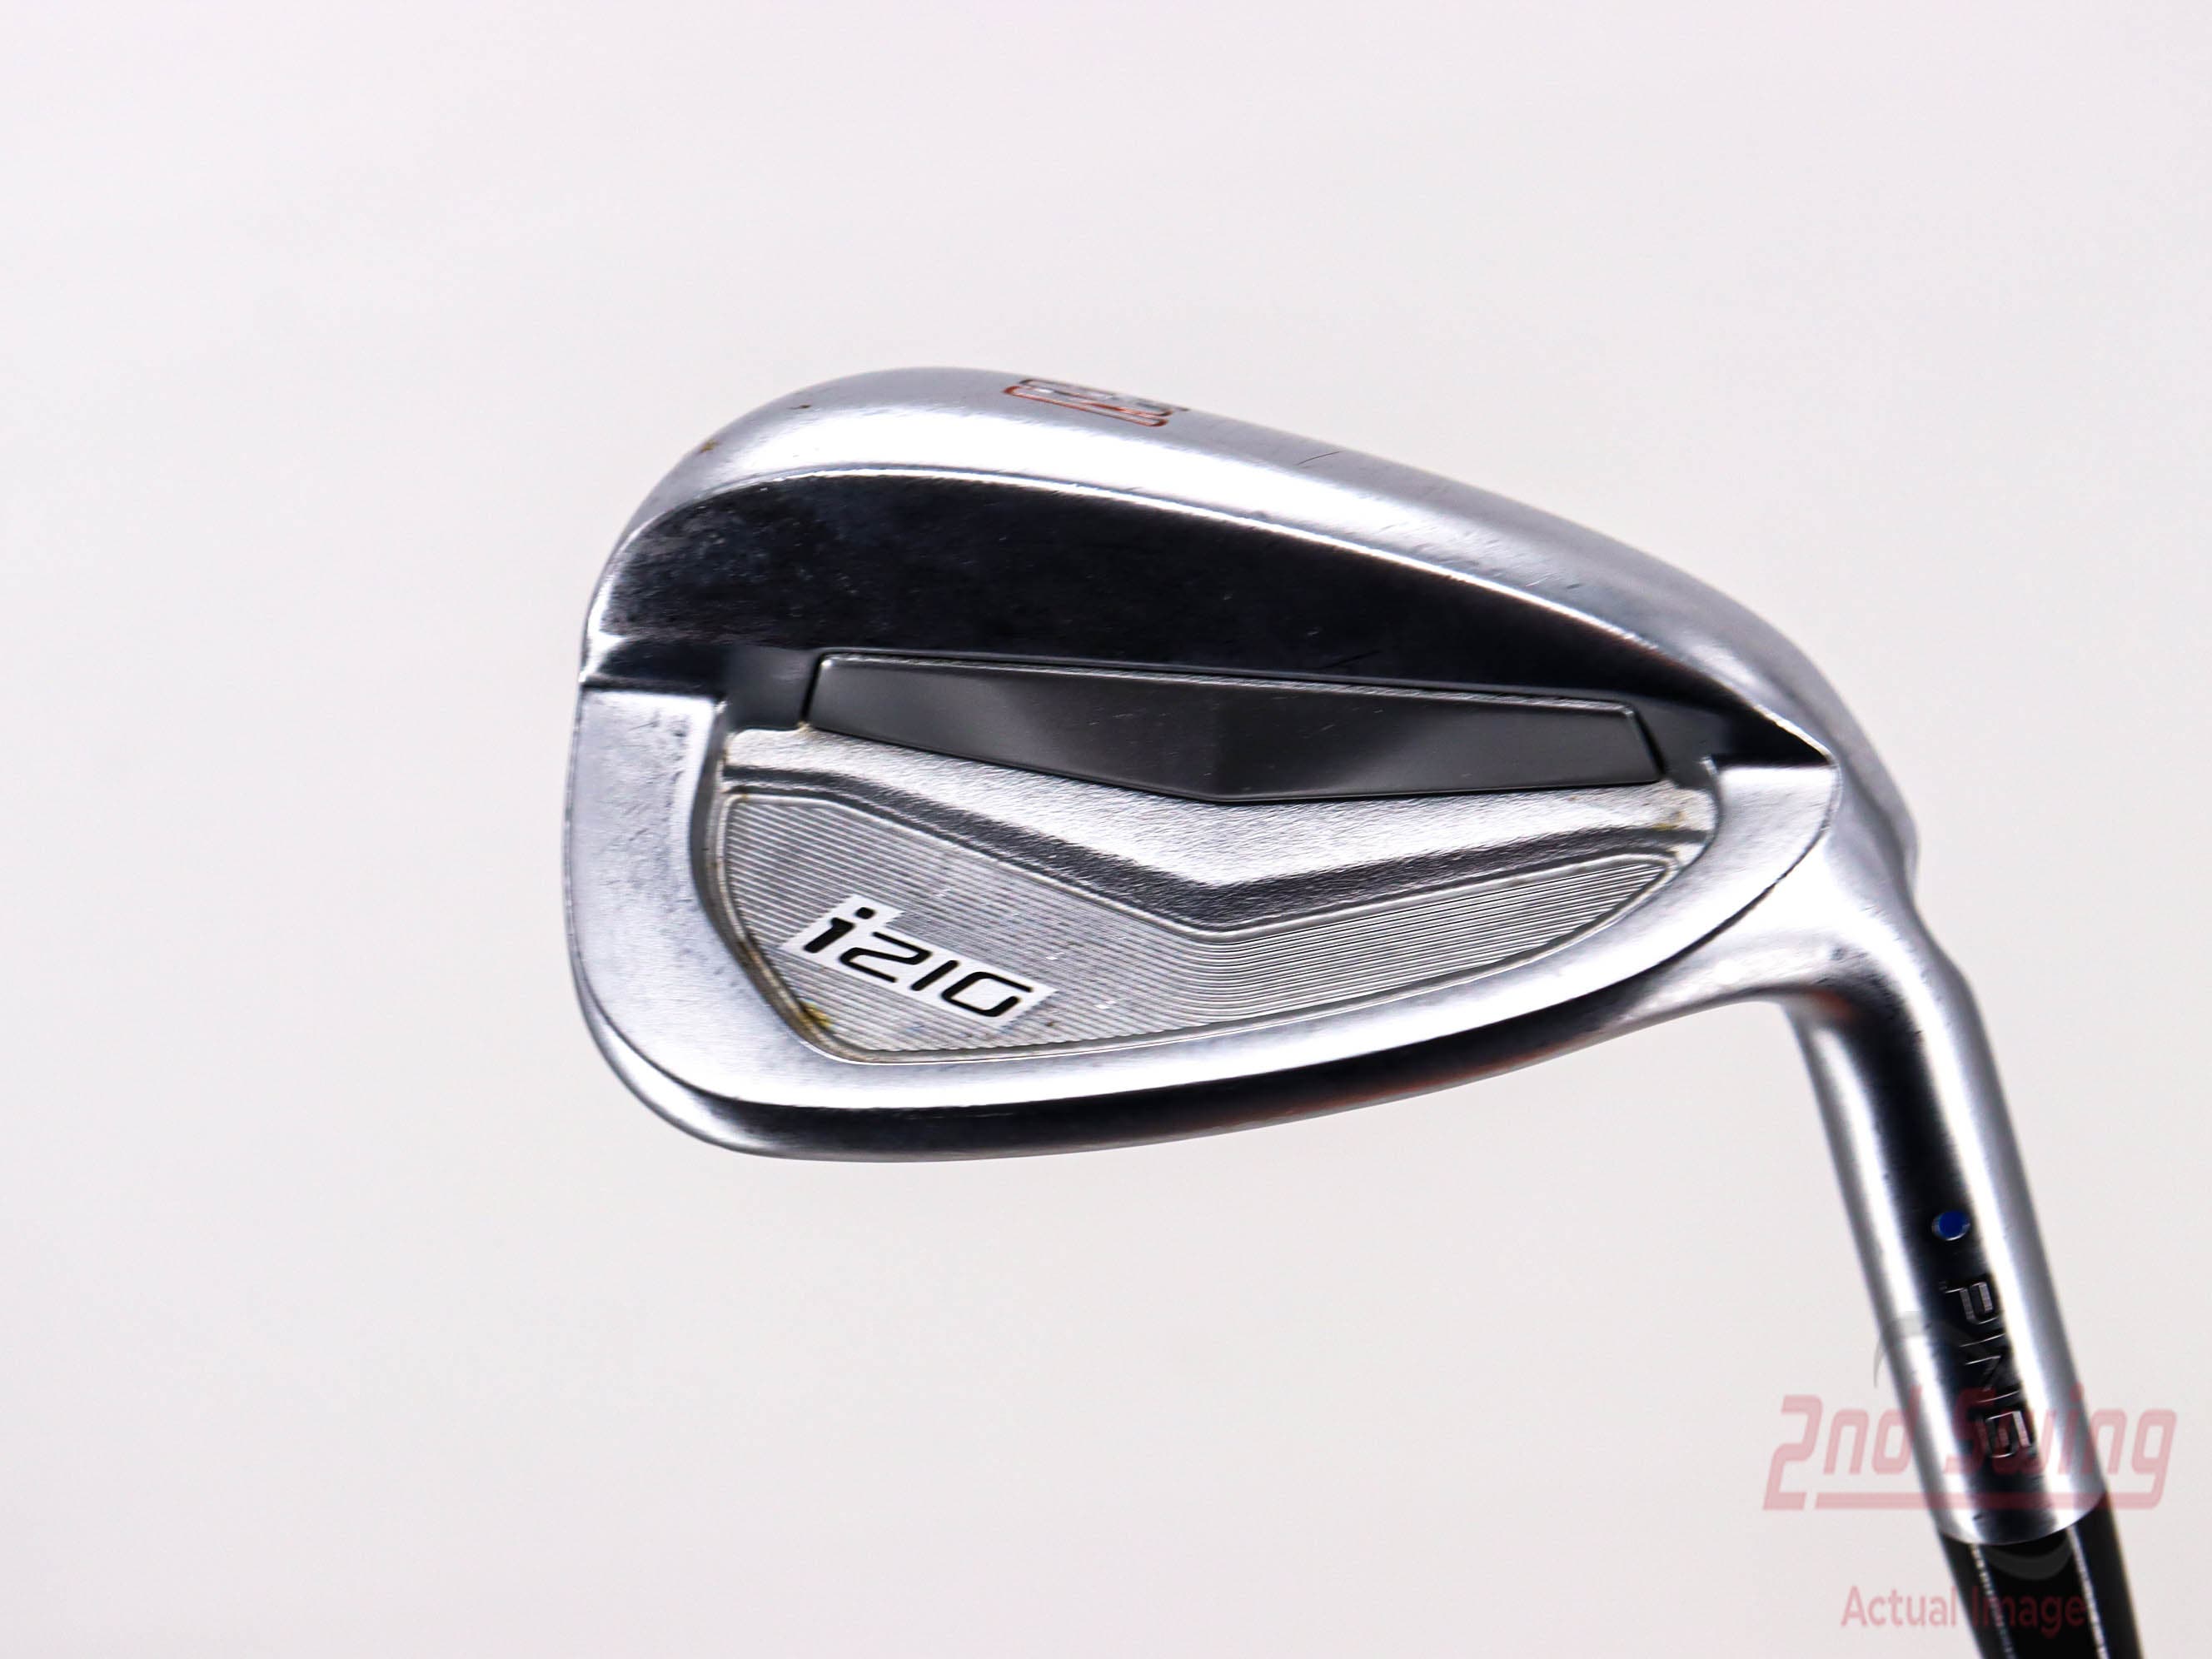 Ping i210 Single Iron | 2nd Swing Golf